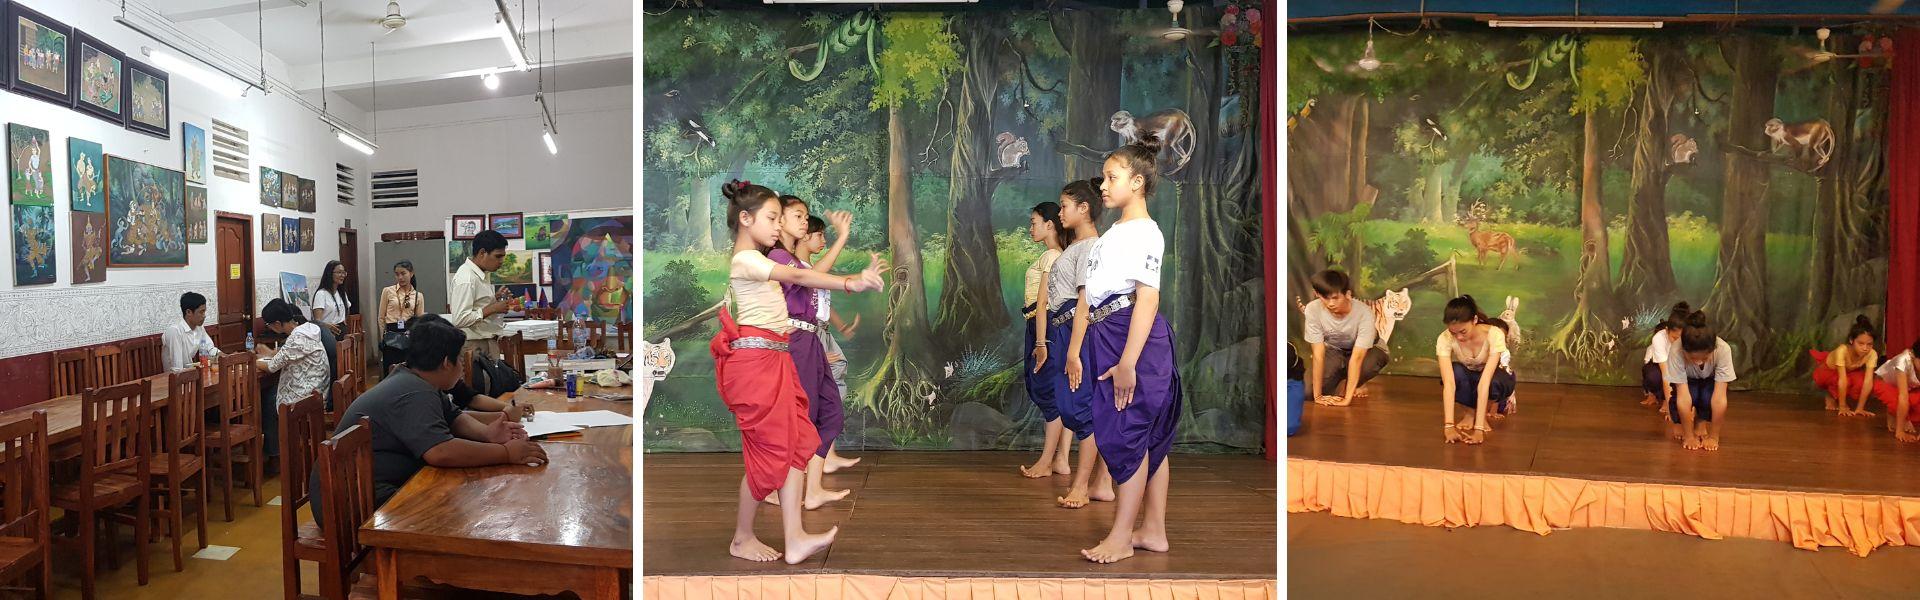 École d'arts khmers traditionnels